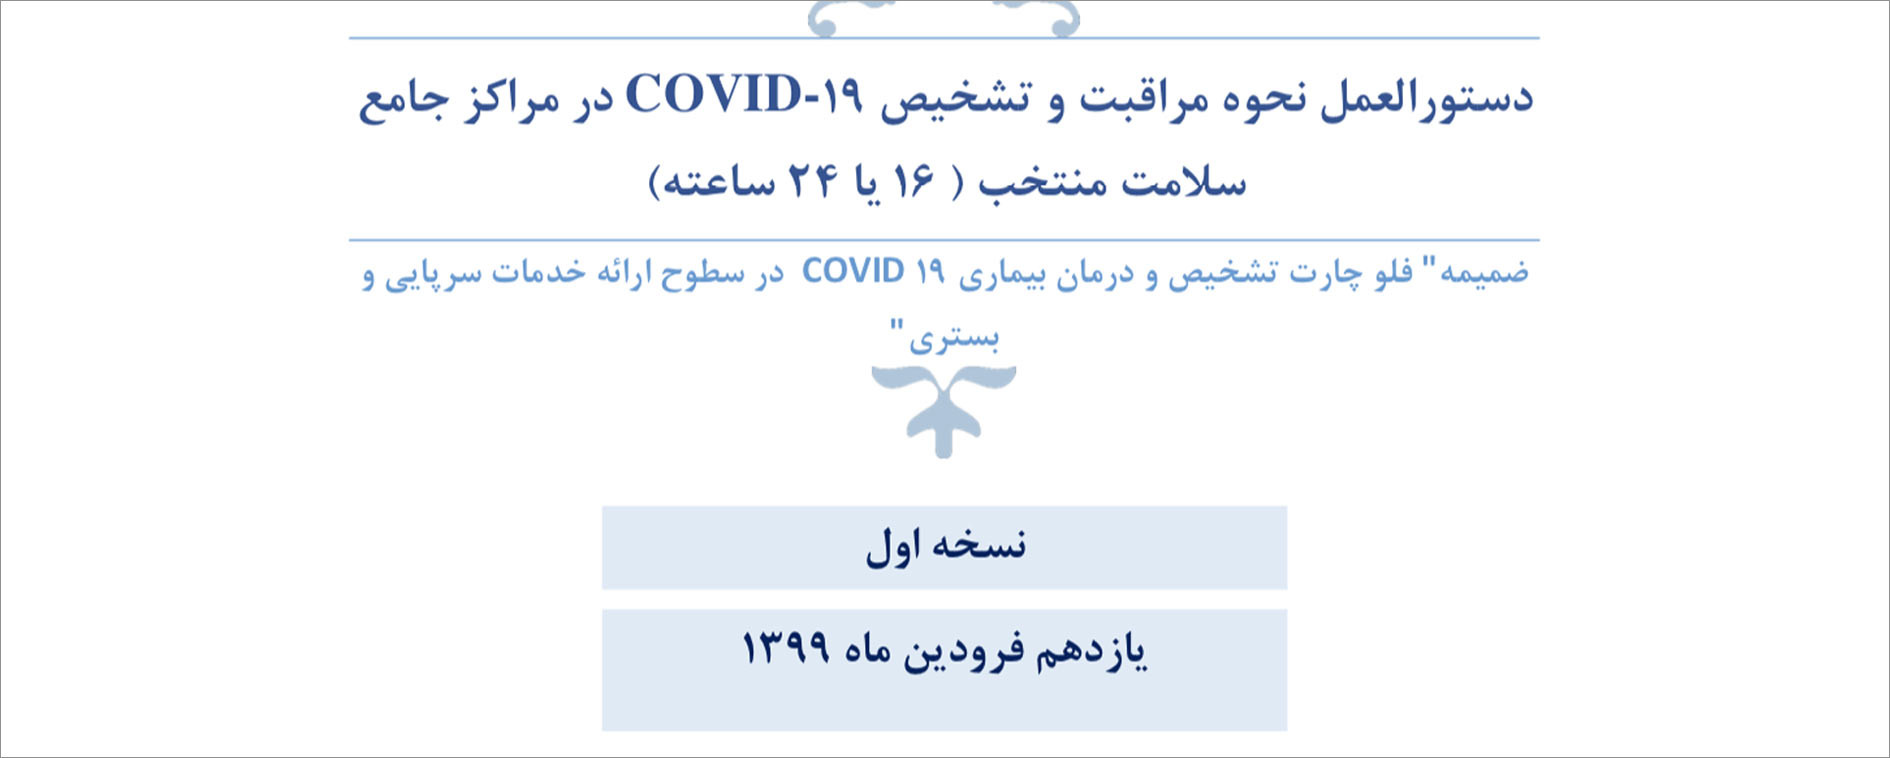 دستورالعمل نحوه مراقبت و تشخیص COVID-19 در مراکز جامع سلامت منتخب: نسخه اول ۱۱ فروردین ۹۹